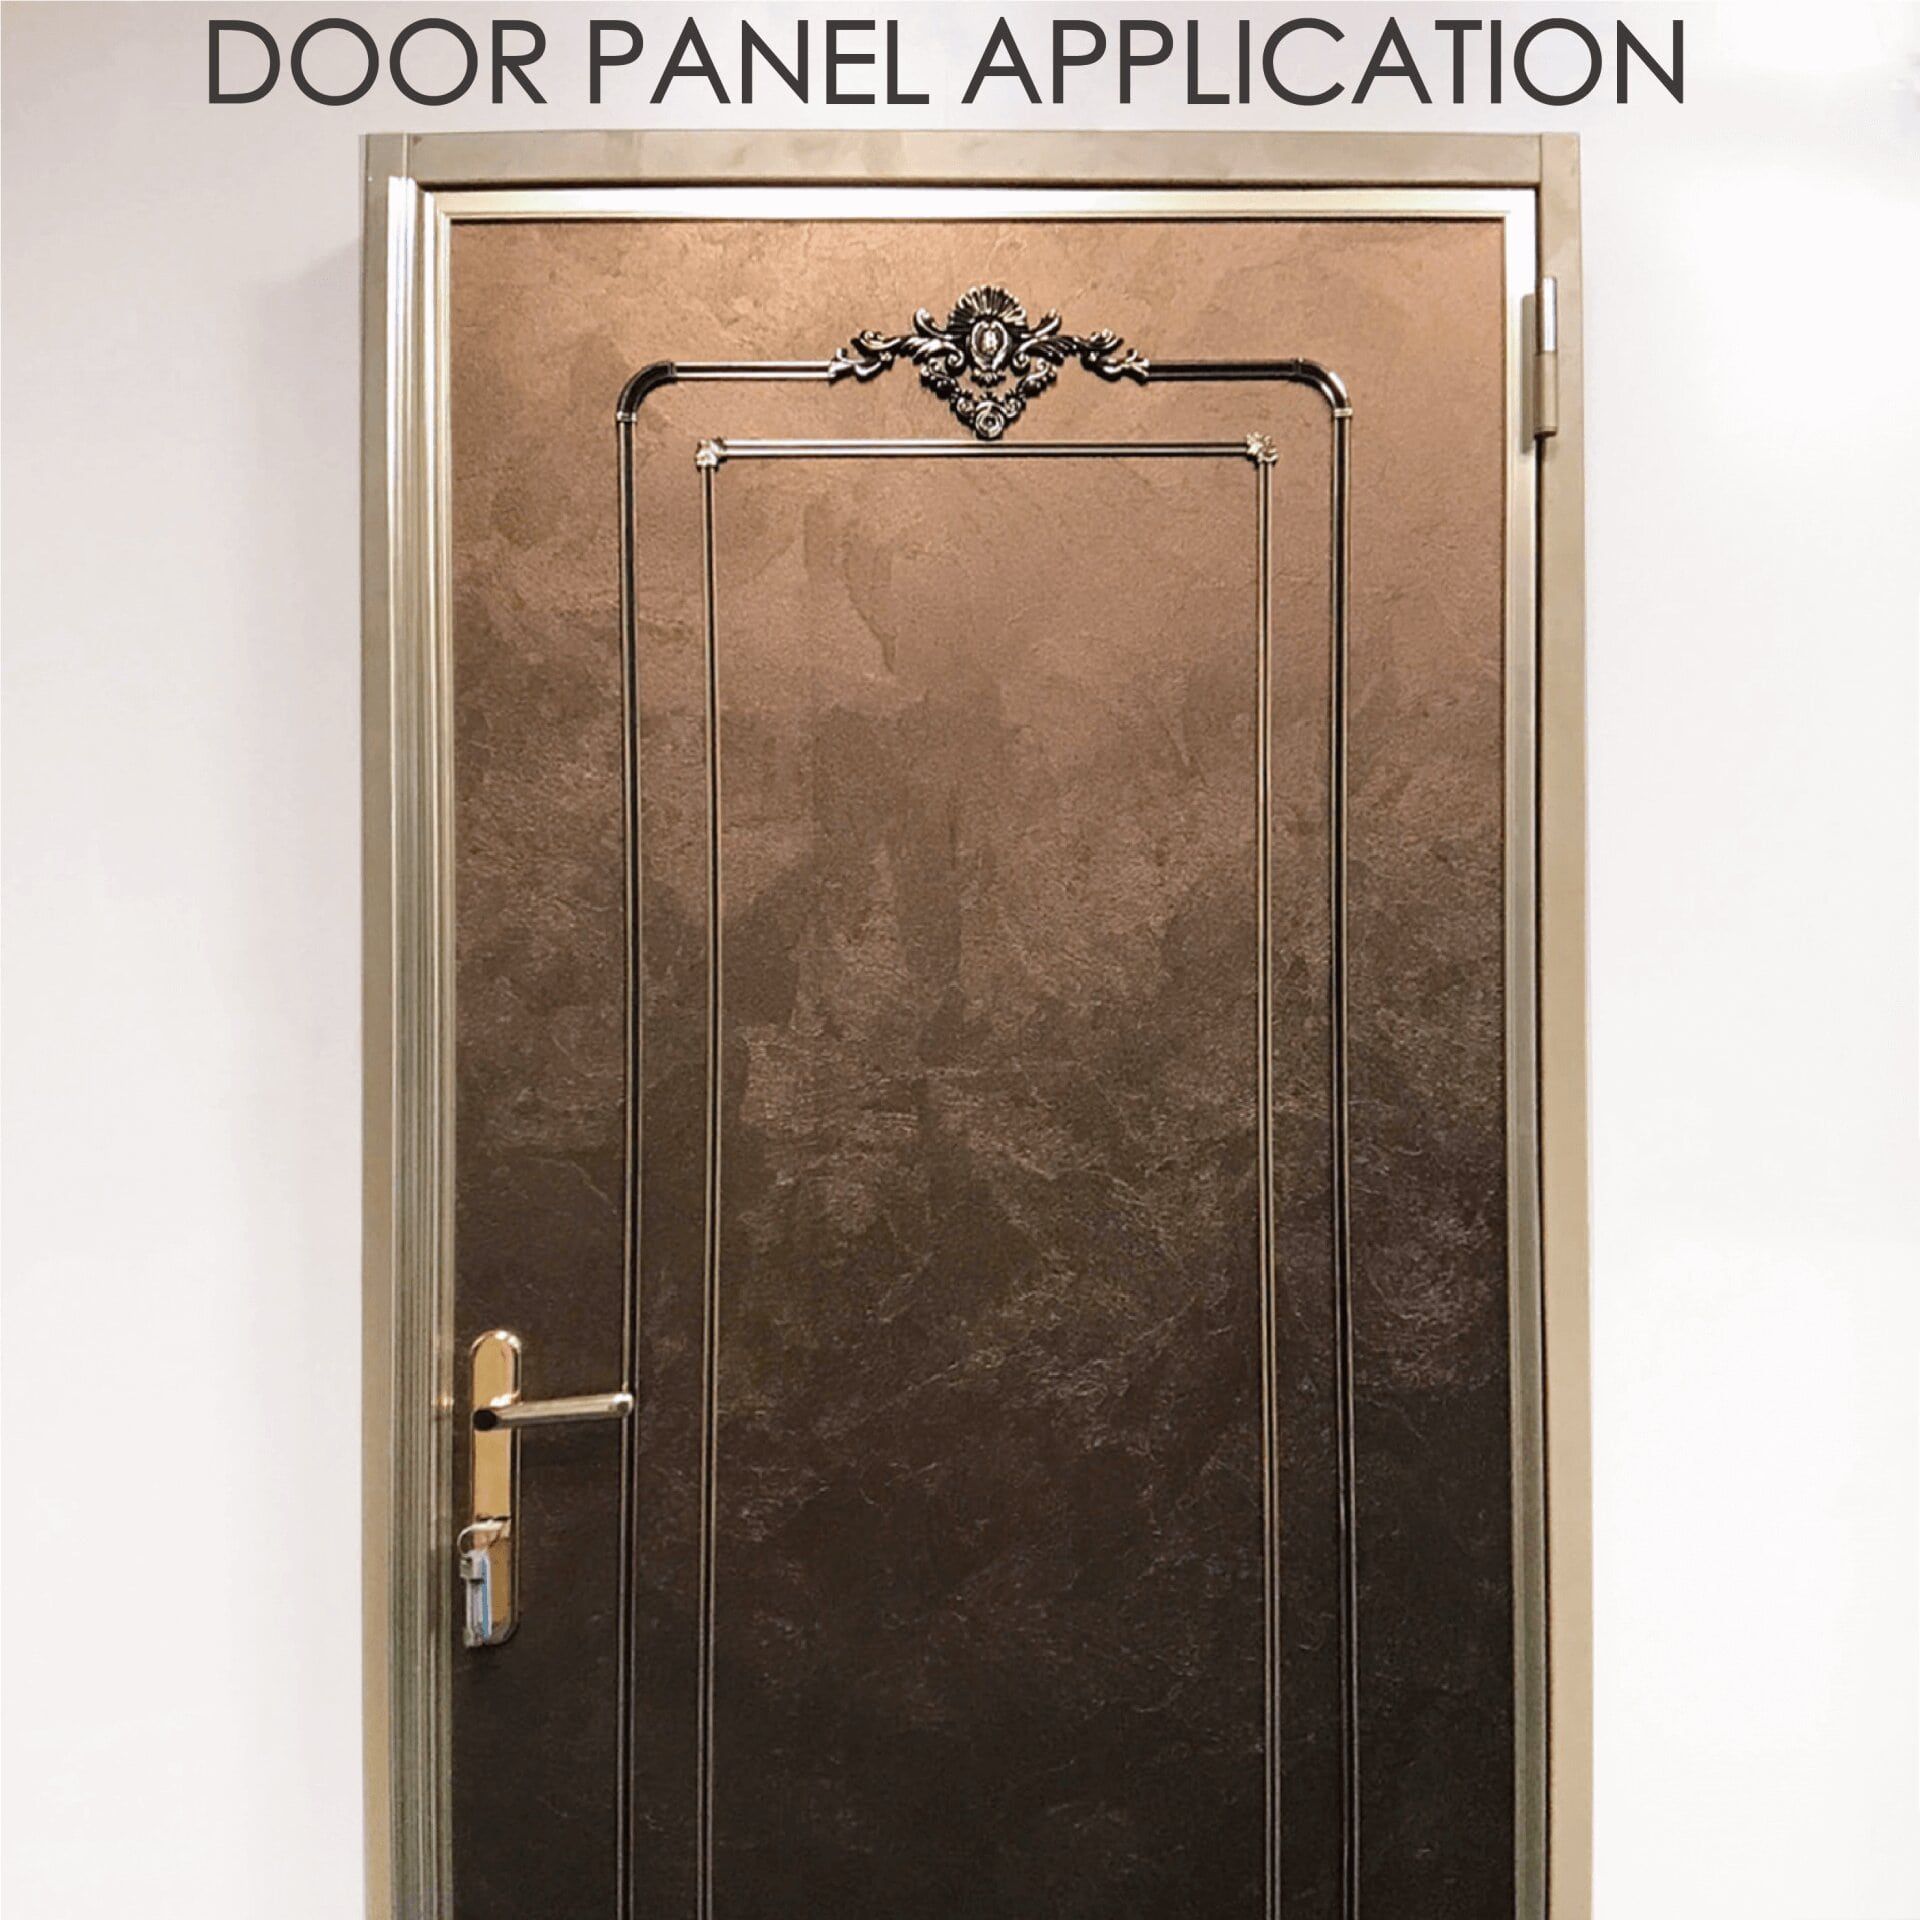 Výměna dřevěných dveří za laminovaný kov může zvýšit bezpečnost a odolnost.